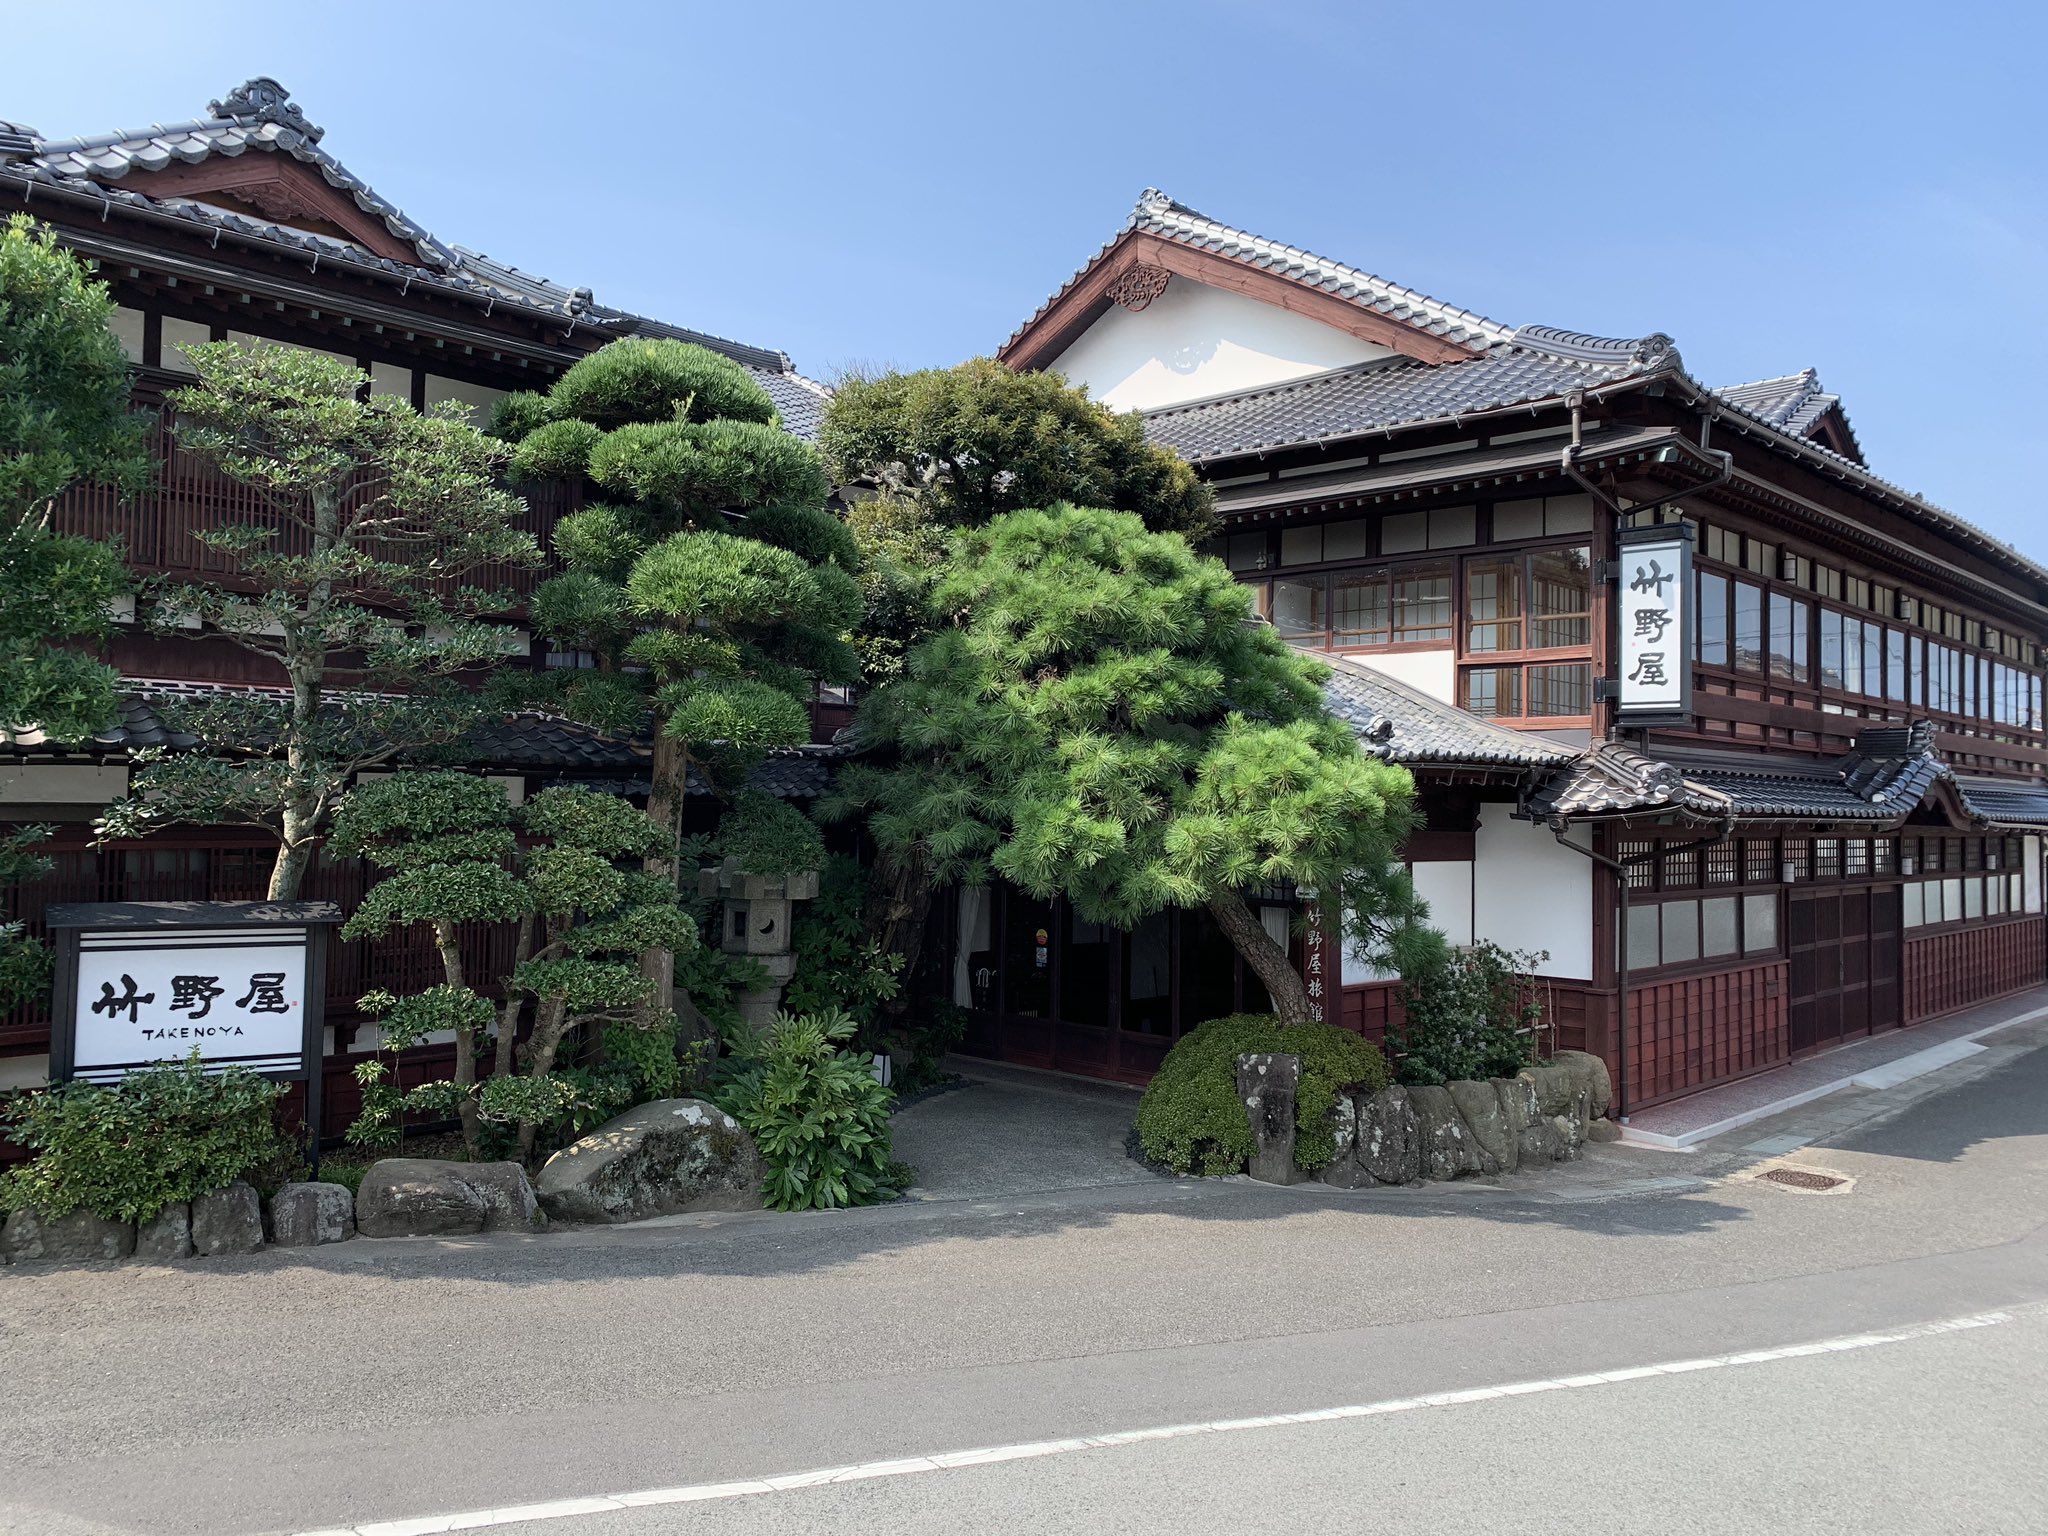 竹内まりやの実家は島根にある老舗旅館「竹野屋」